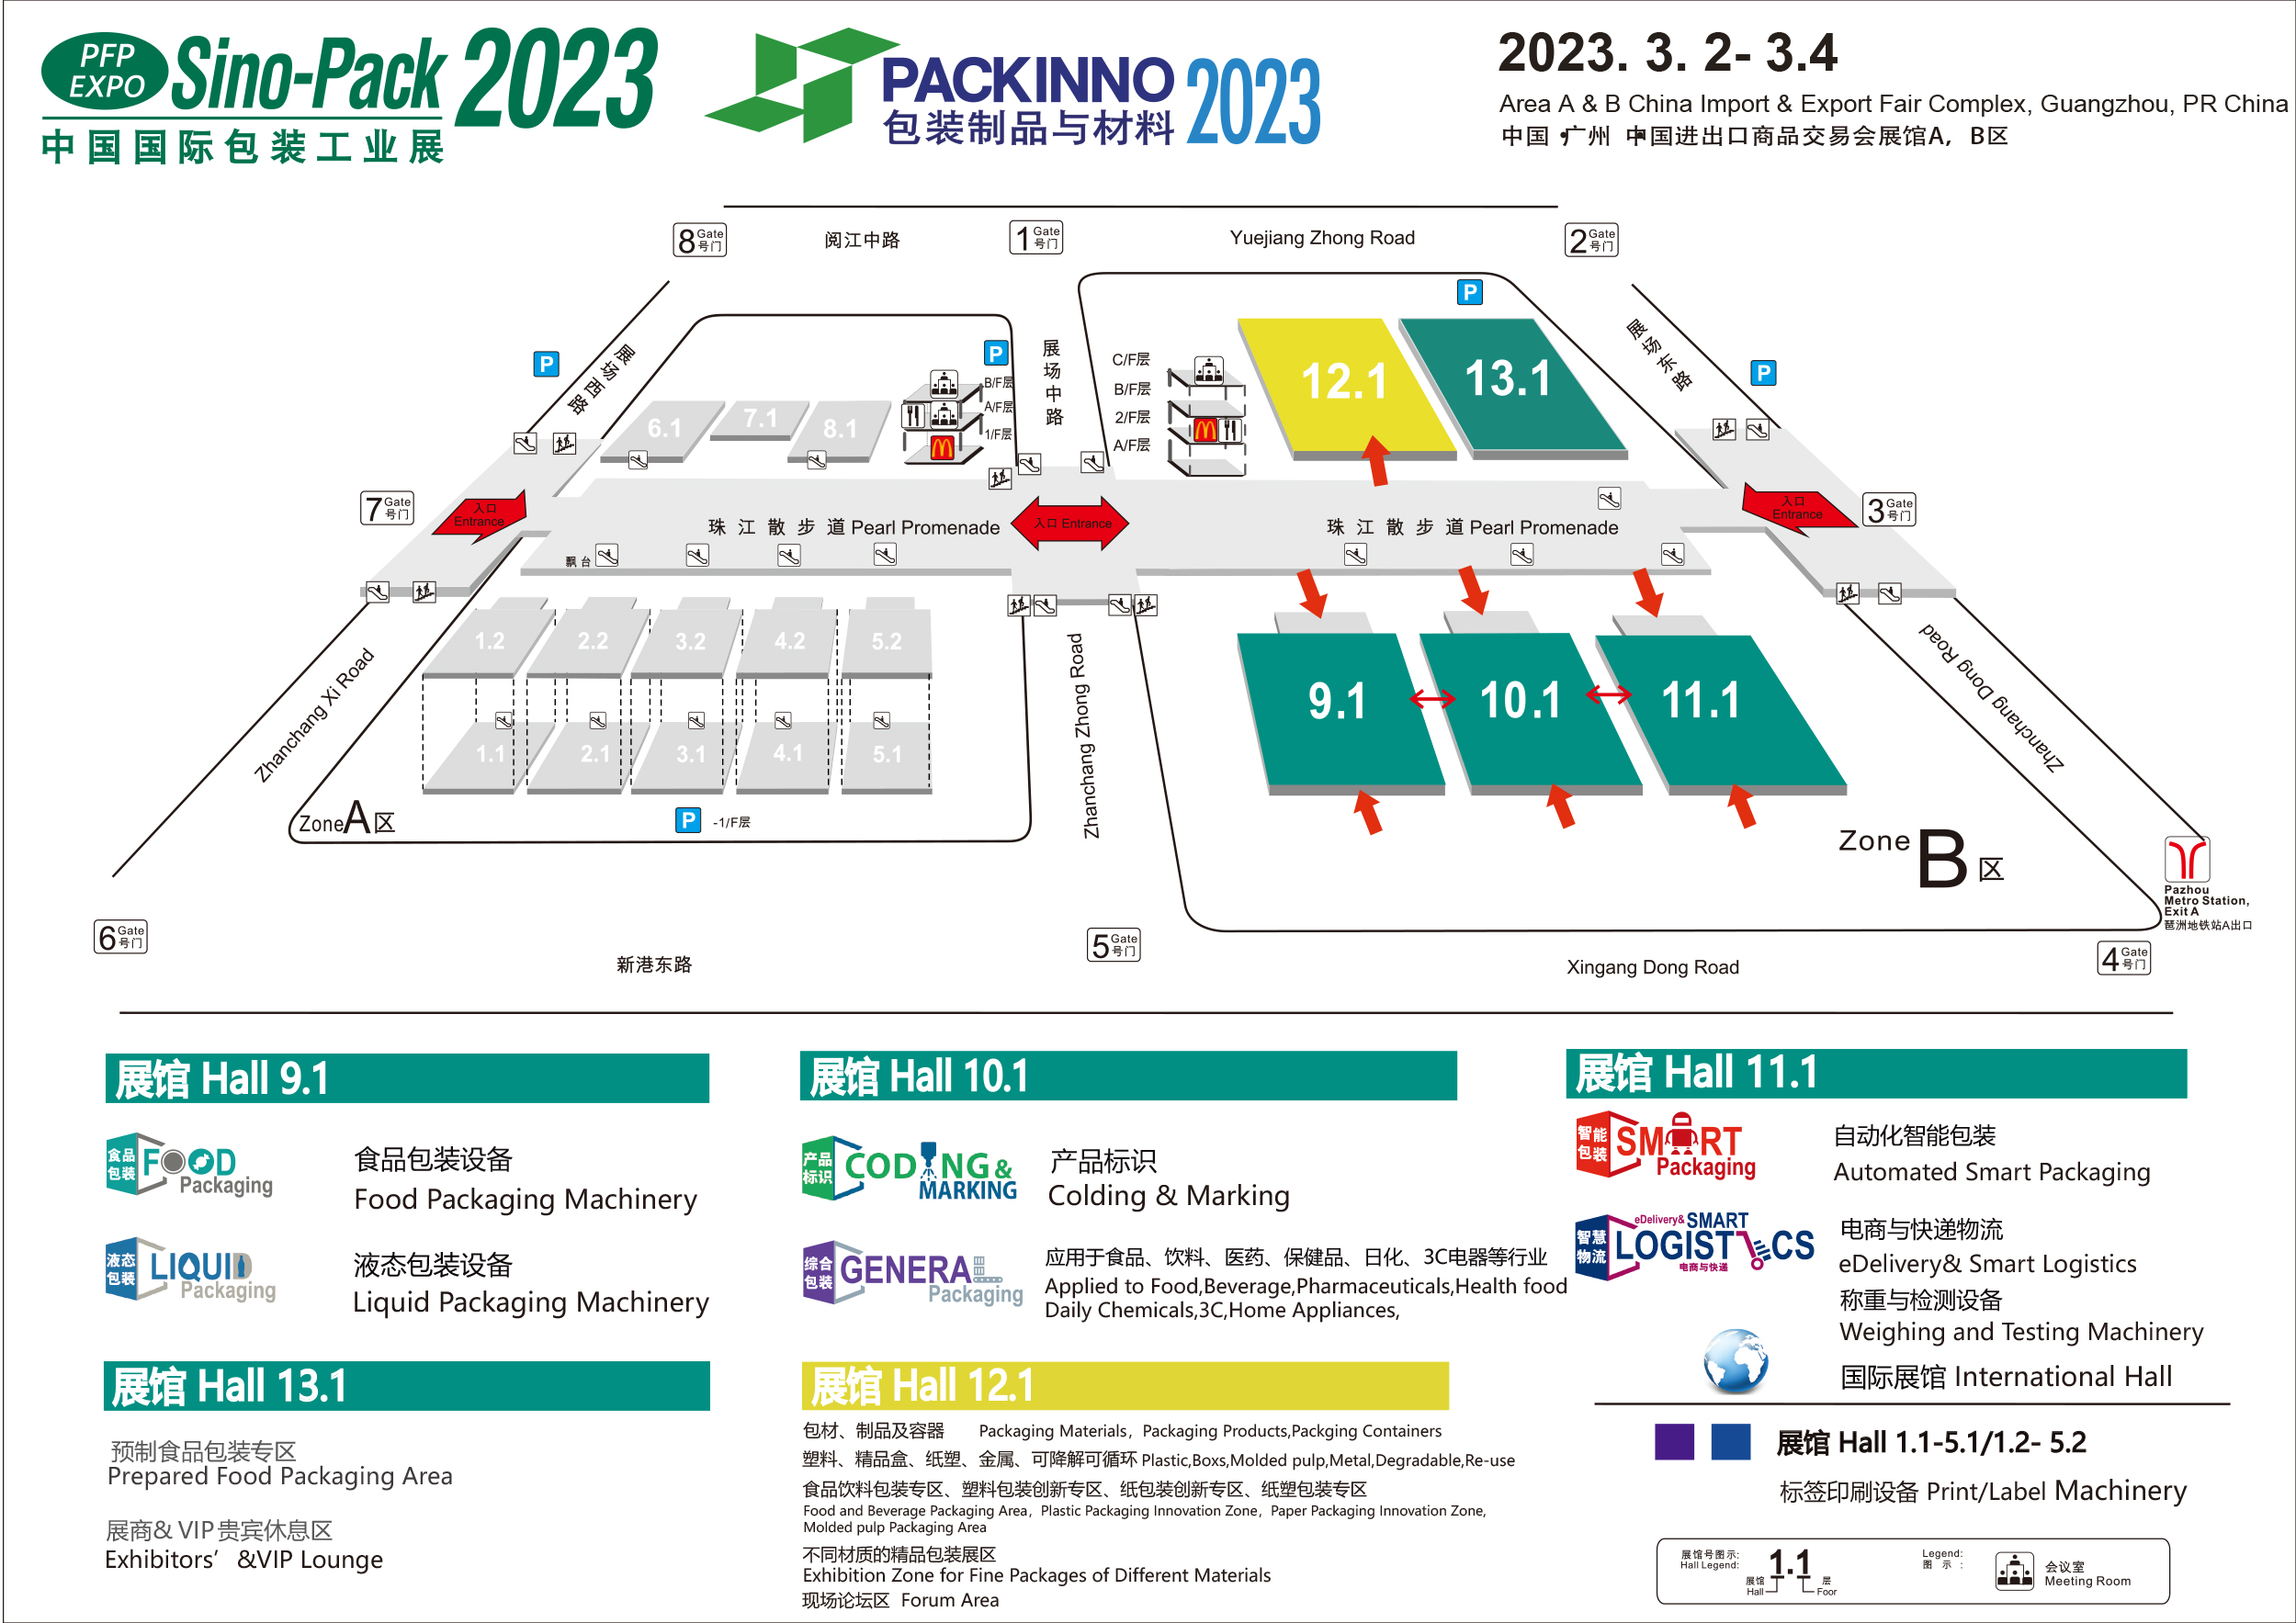 GPACINNO23_floorplan.jpg 